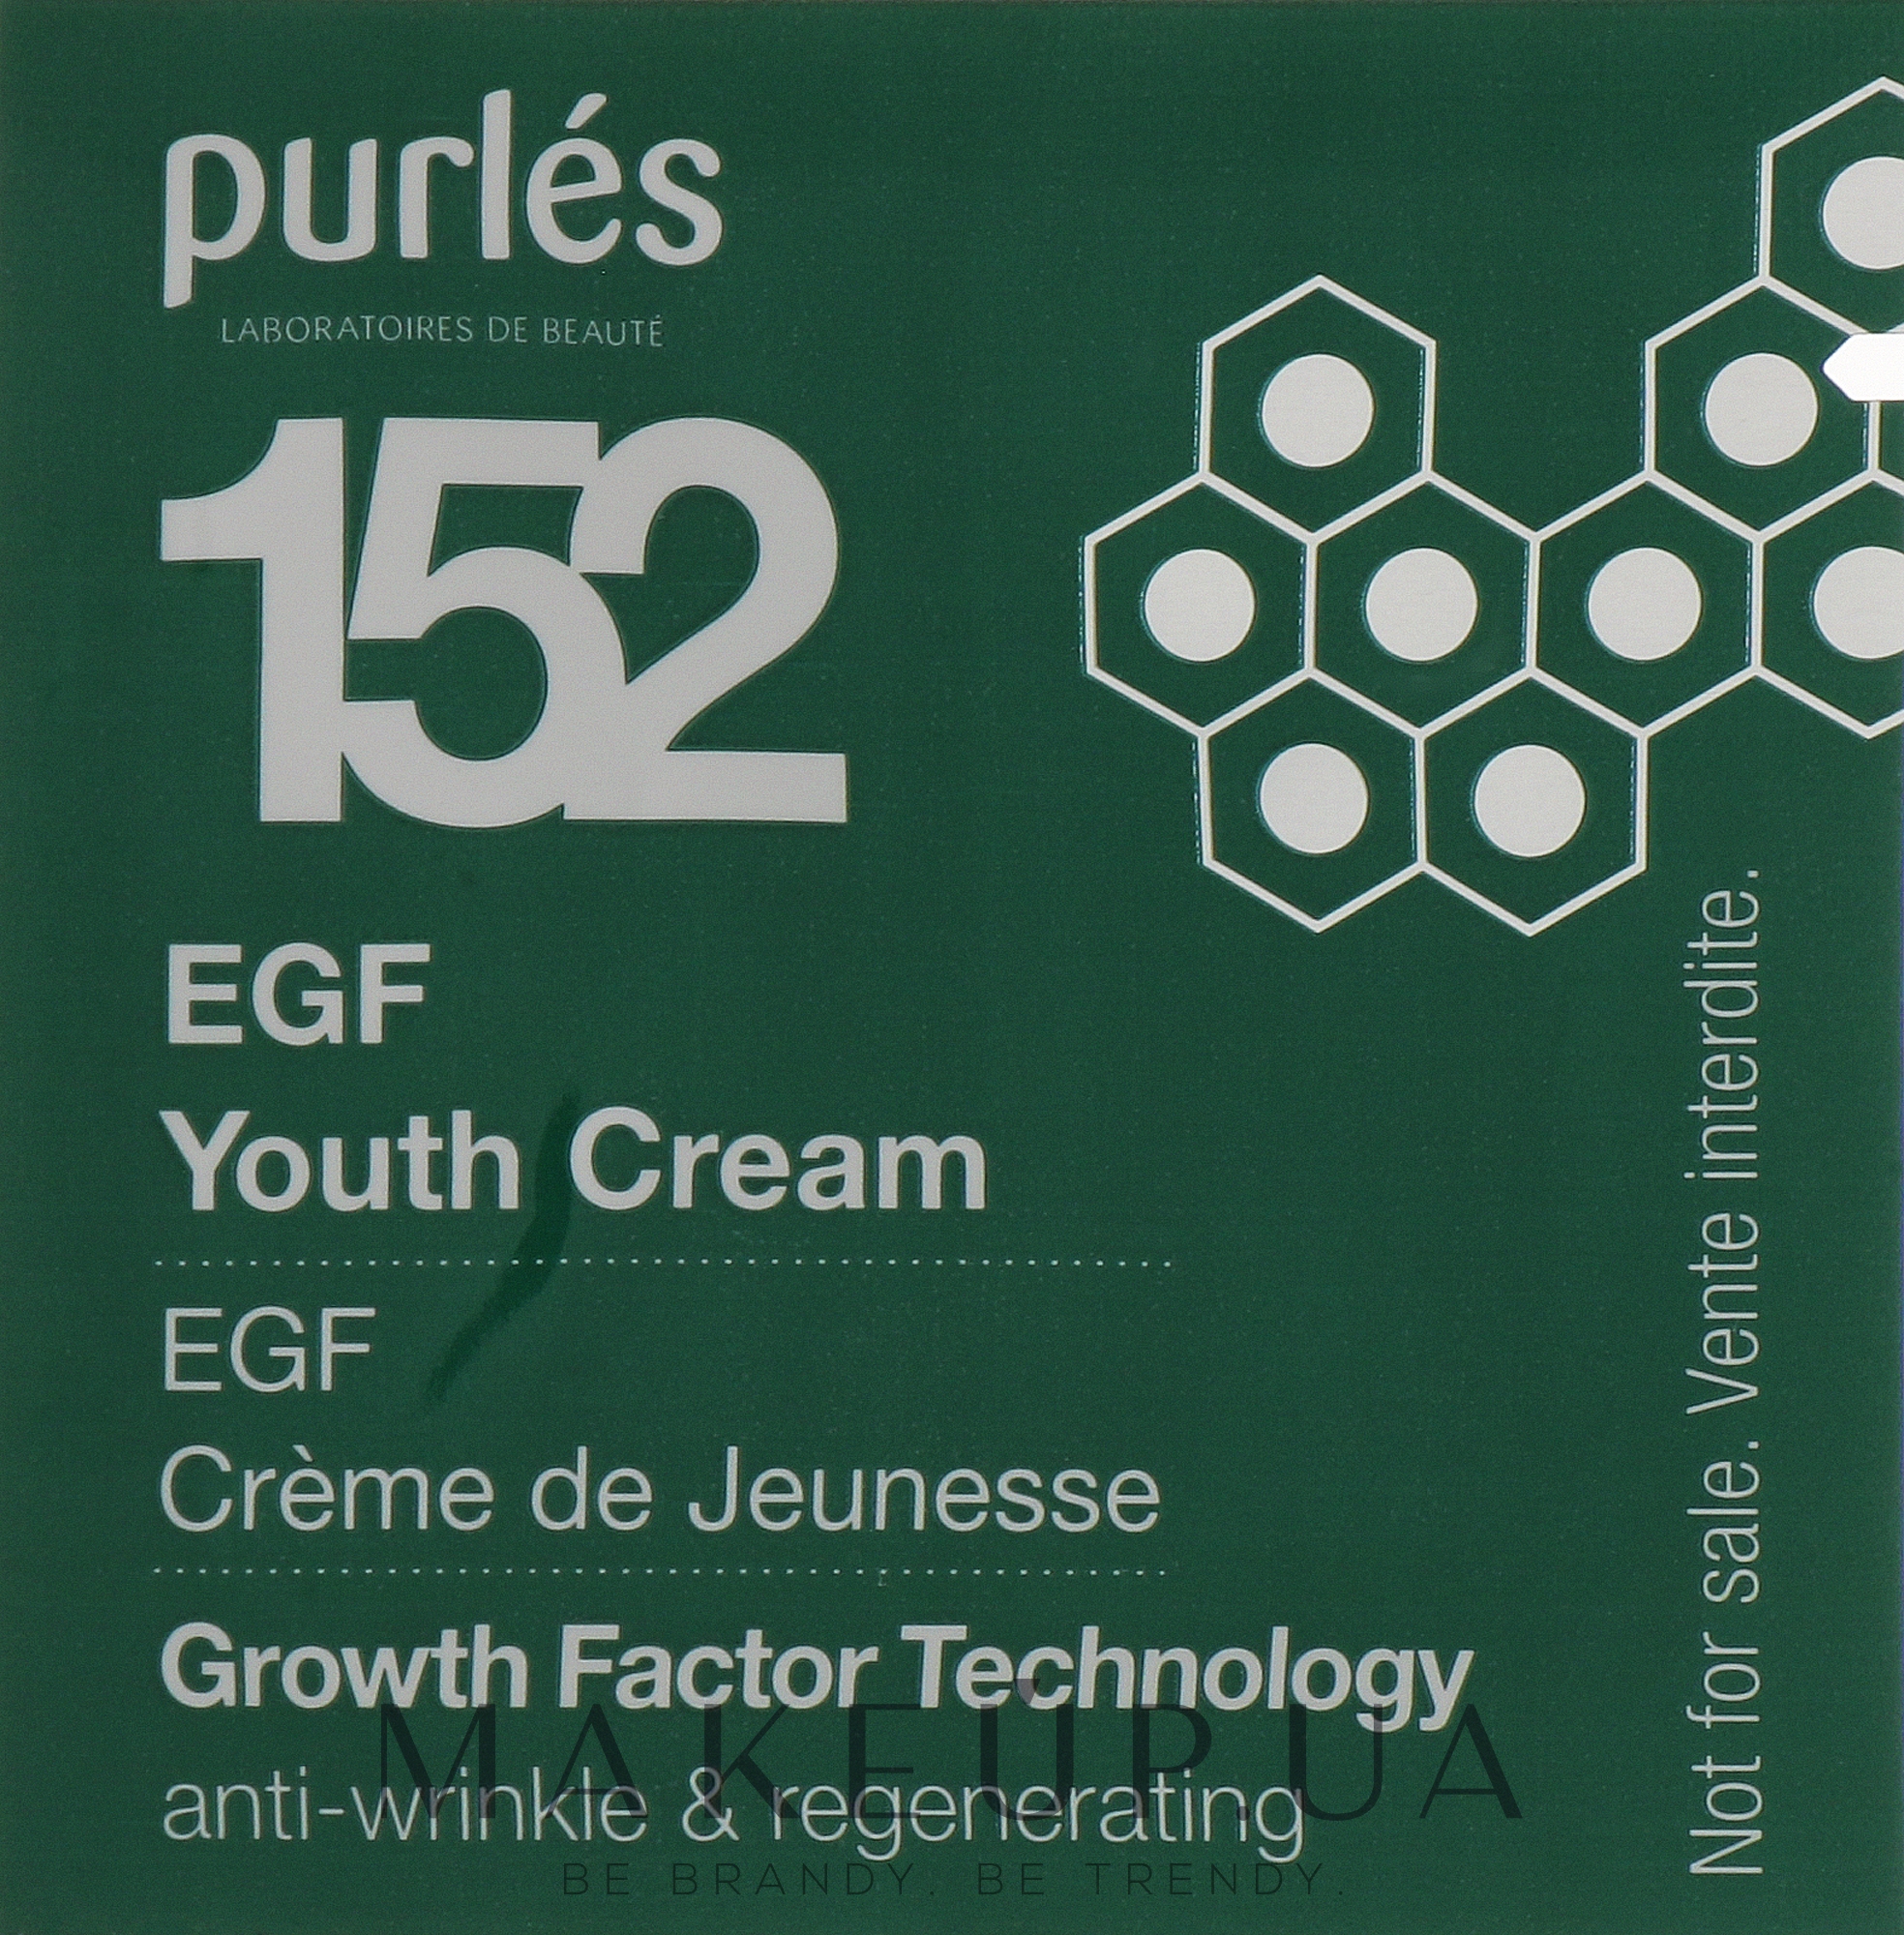 Регенерирующий омолаживающий крем для лица - Purles Growth Factor Technology 152 Youth Cream (пробник) — фото 1ml